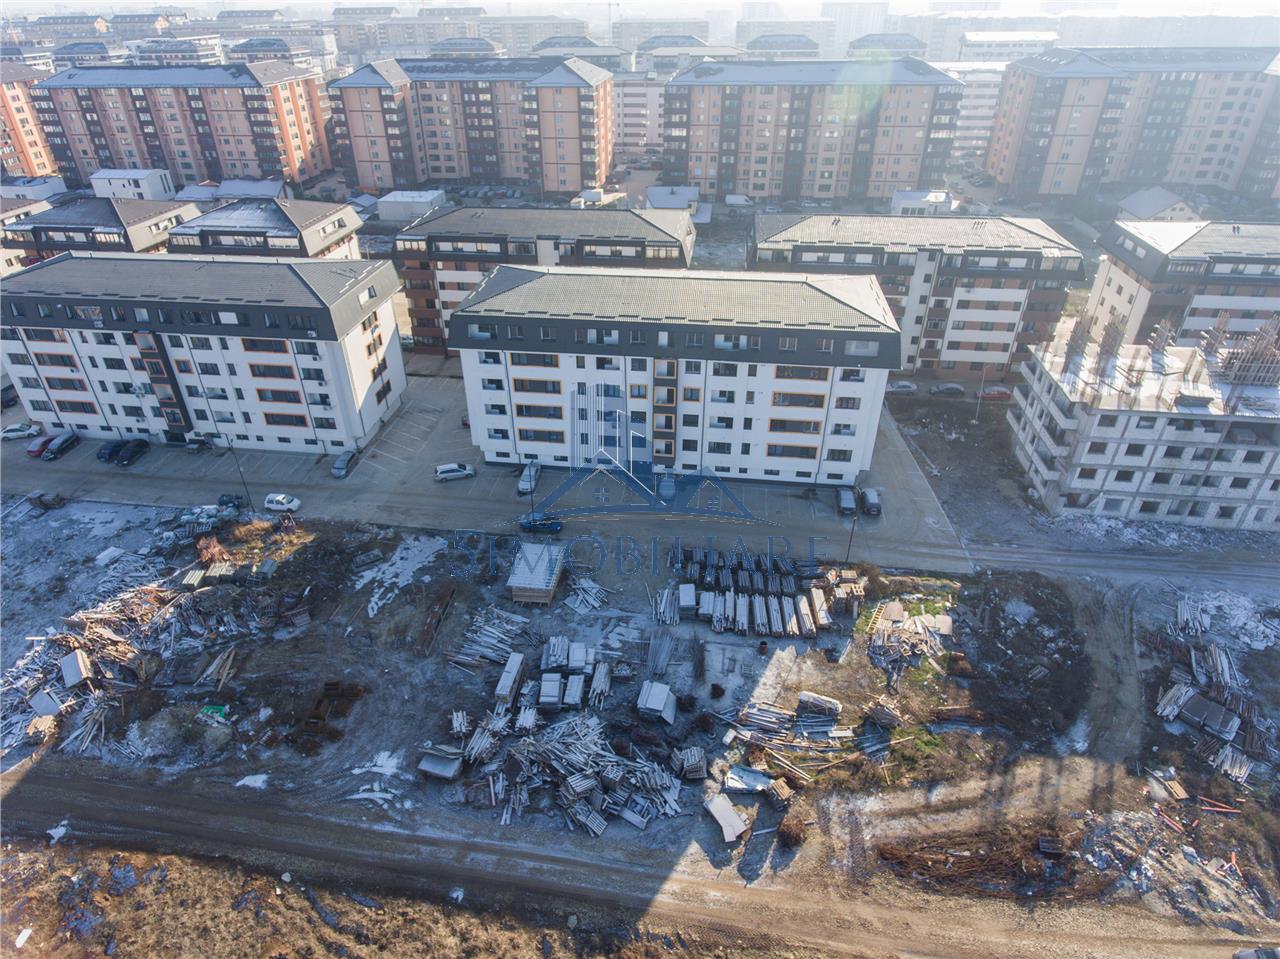 Militari Residence- Teren de Vanzare 1224 mp/Certificat de Urbanism de Constructie